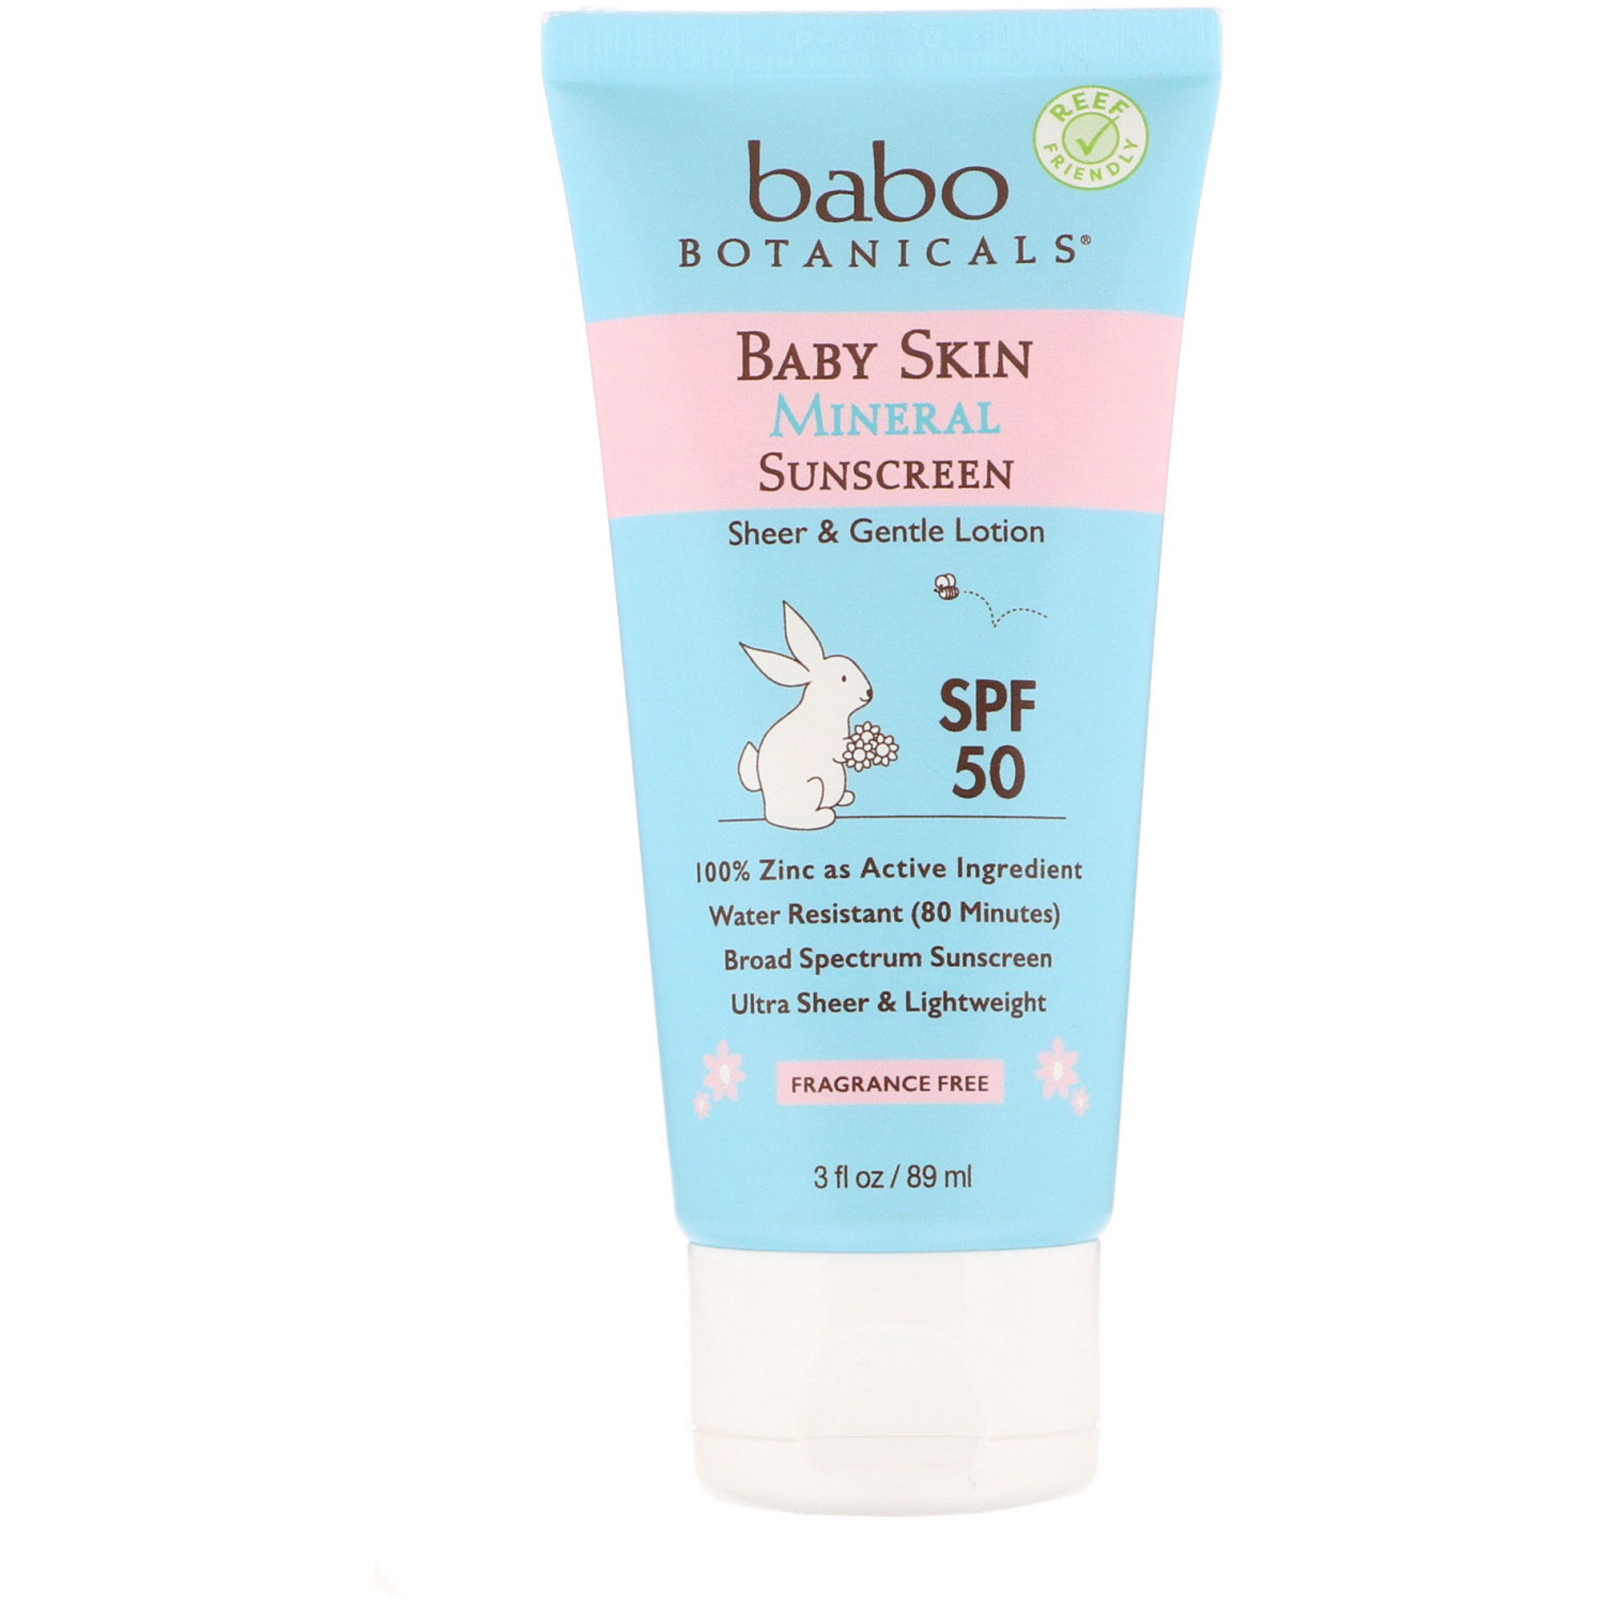 曬太多肌膚提早老化 | 10件 防曬 產品迎炎夏 | Babo Botanicals, Baby Skin